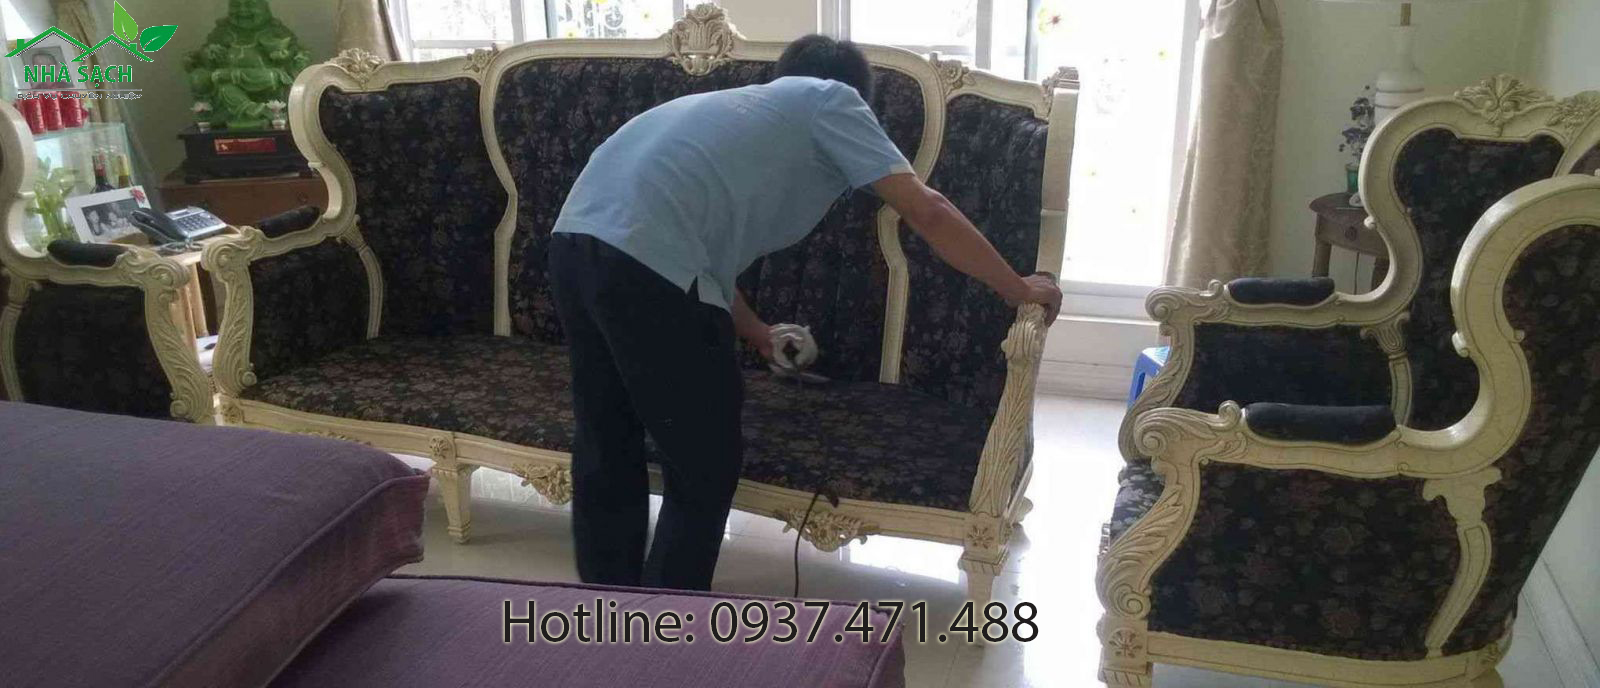 Dịch vụ giặt ghế sofa chất lượng tại tphcm